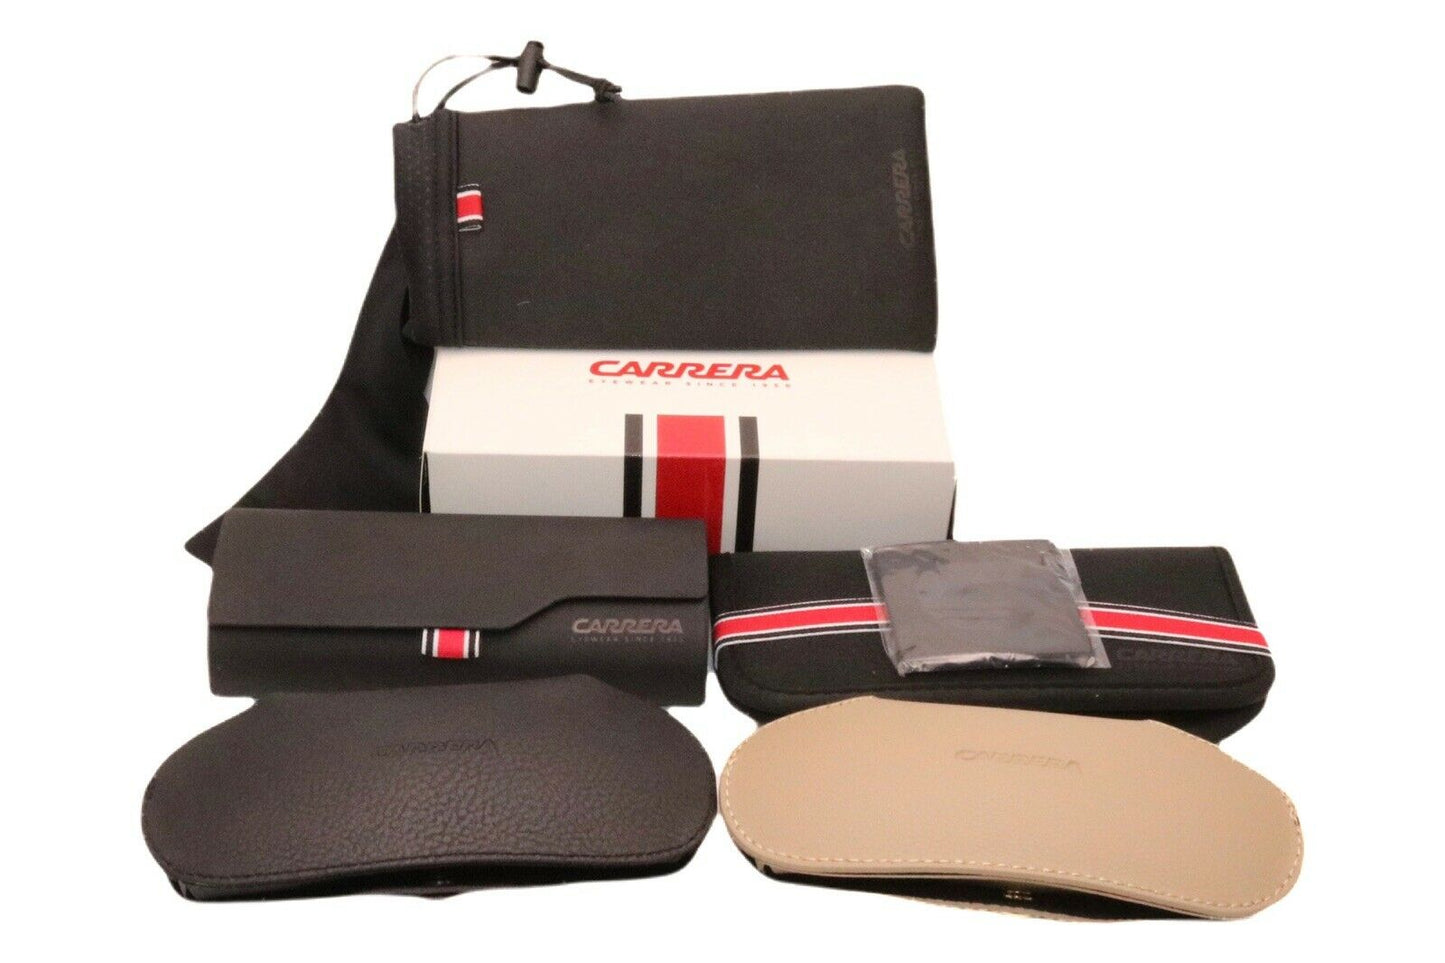 Carrera CARRERA 308 010A 53 53mm New Eyeglasses